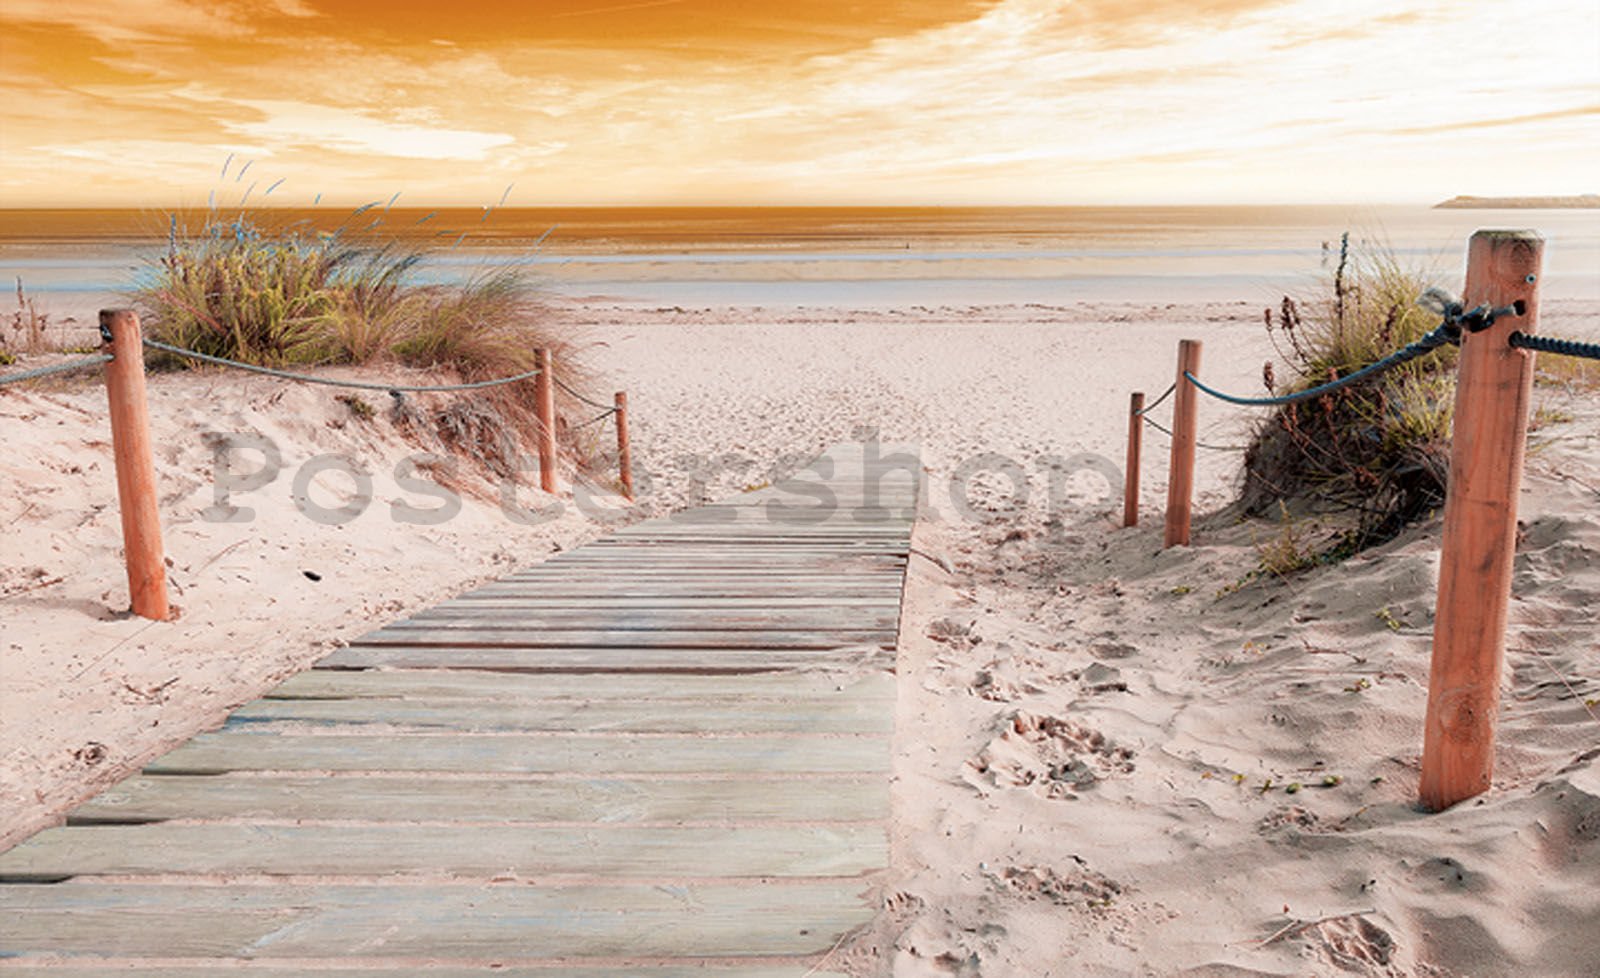 Fototapeta vliesová: Pláž (4) - 208x146 cm